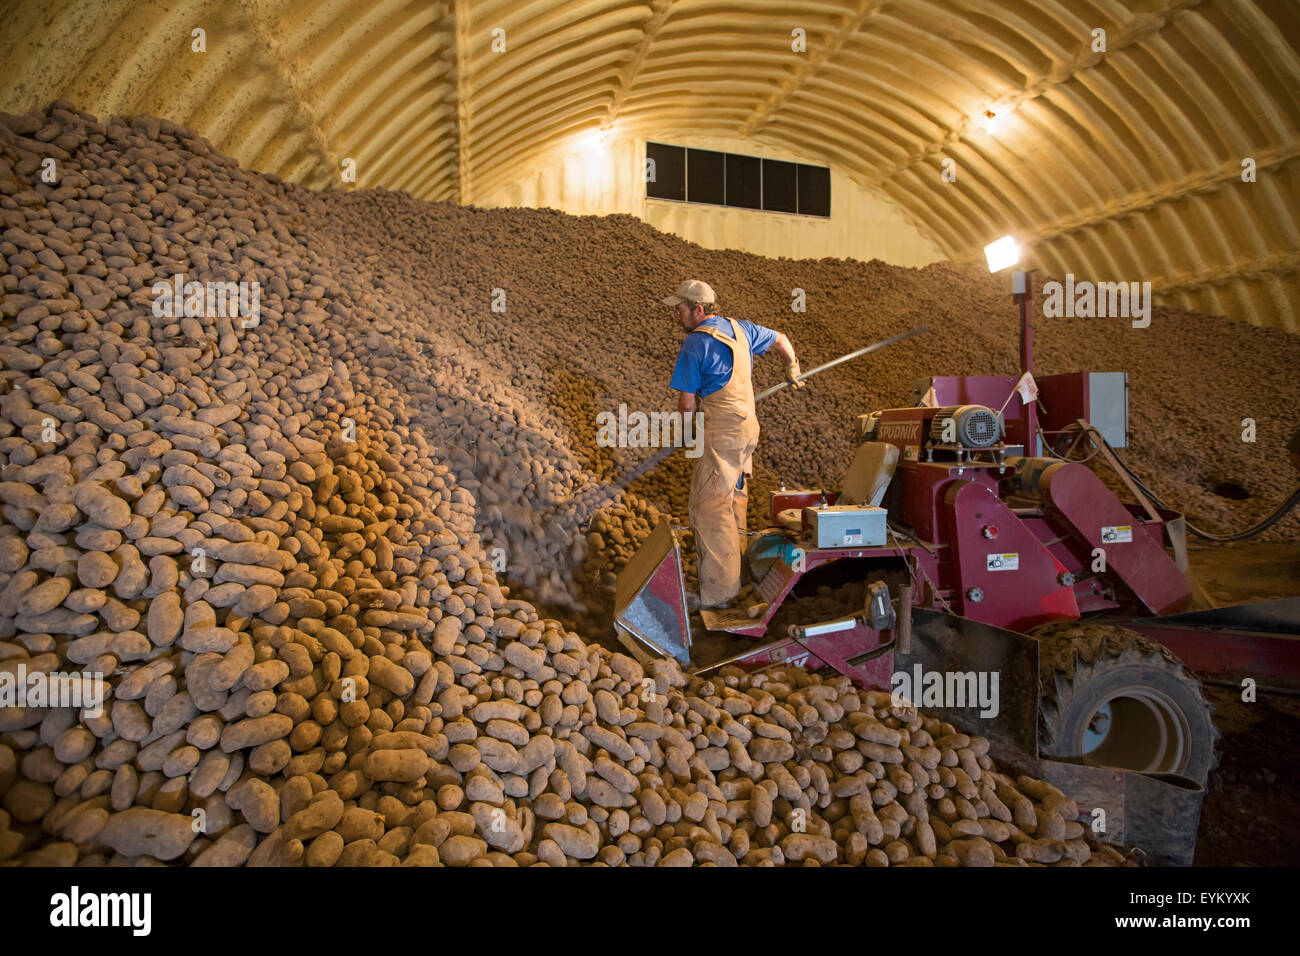 Shelley, New York - Un travailleur se charge de pommes de terre d'une pomme de terre de la ferme cave pour livraison à une usine de conditionnement de pommes de terre. Banque D'Images